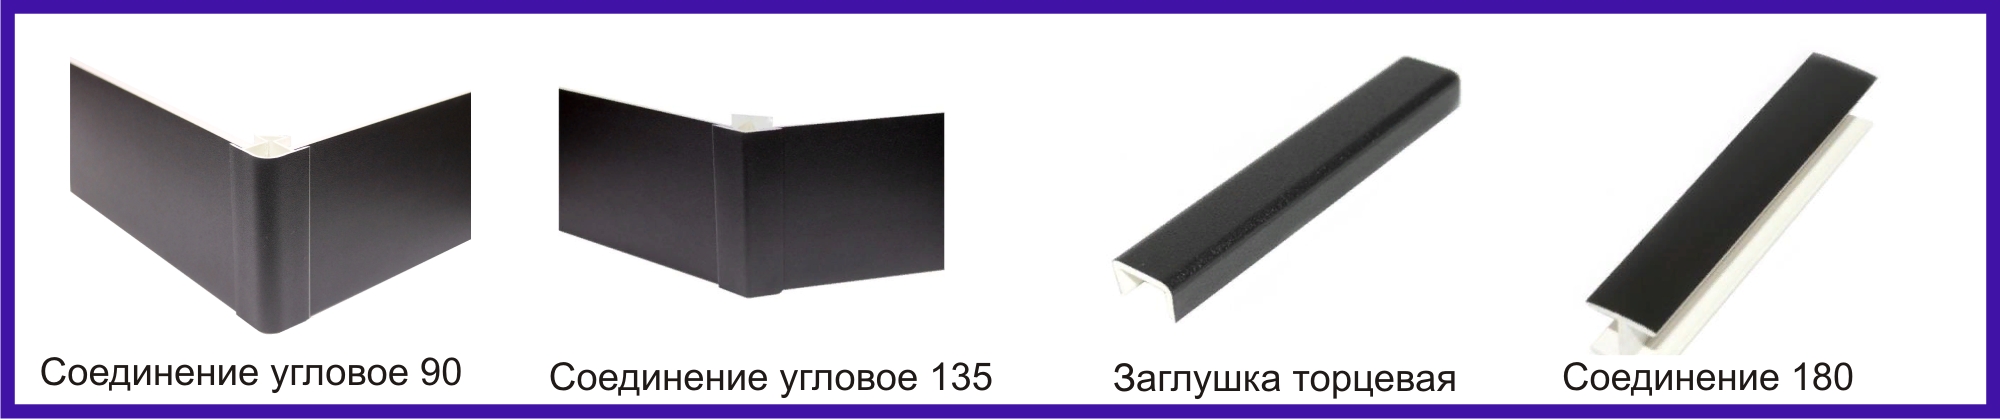 Цоколь ПВХ  L-4 м (чёрный) Длина: 4000 мм Высота: 100, 150 мм Материал: ПВХ Цвет: чёрный Комплектующие: